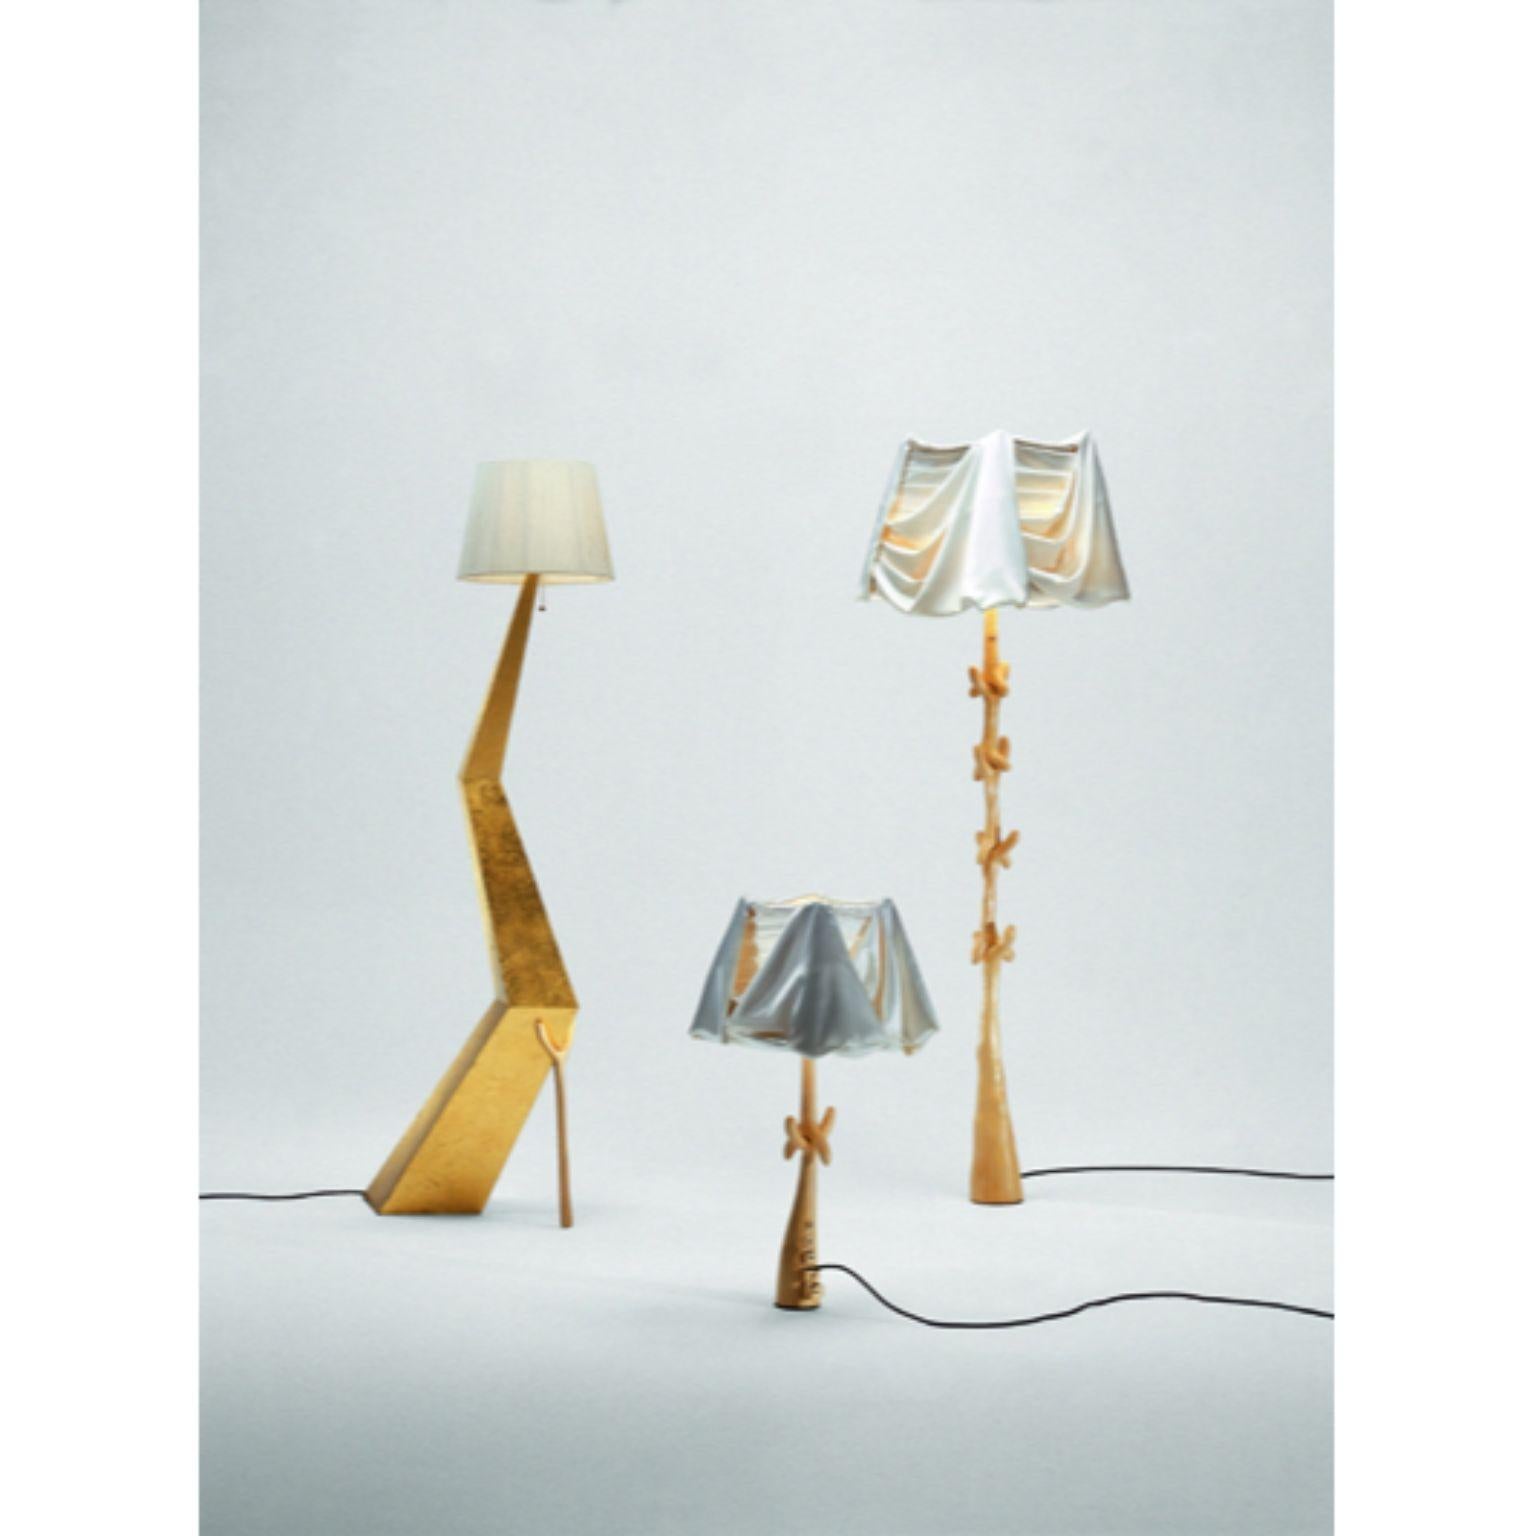 Spanish Cajones Lamp, Salvador Dalí